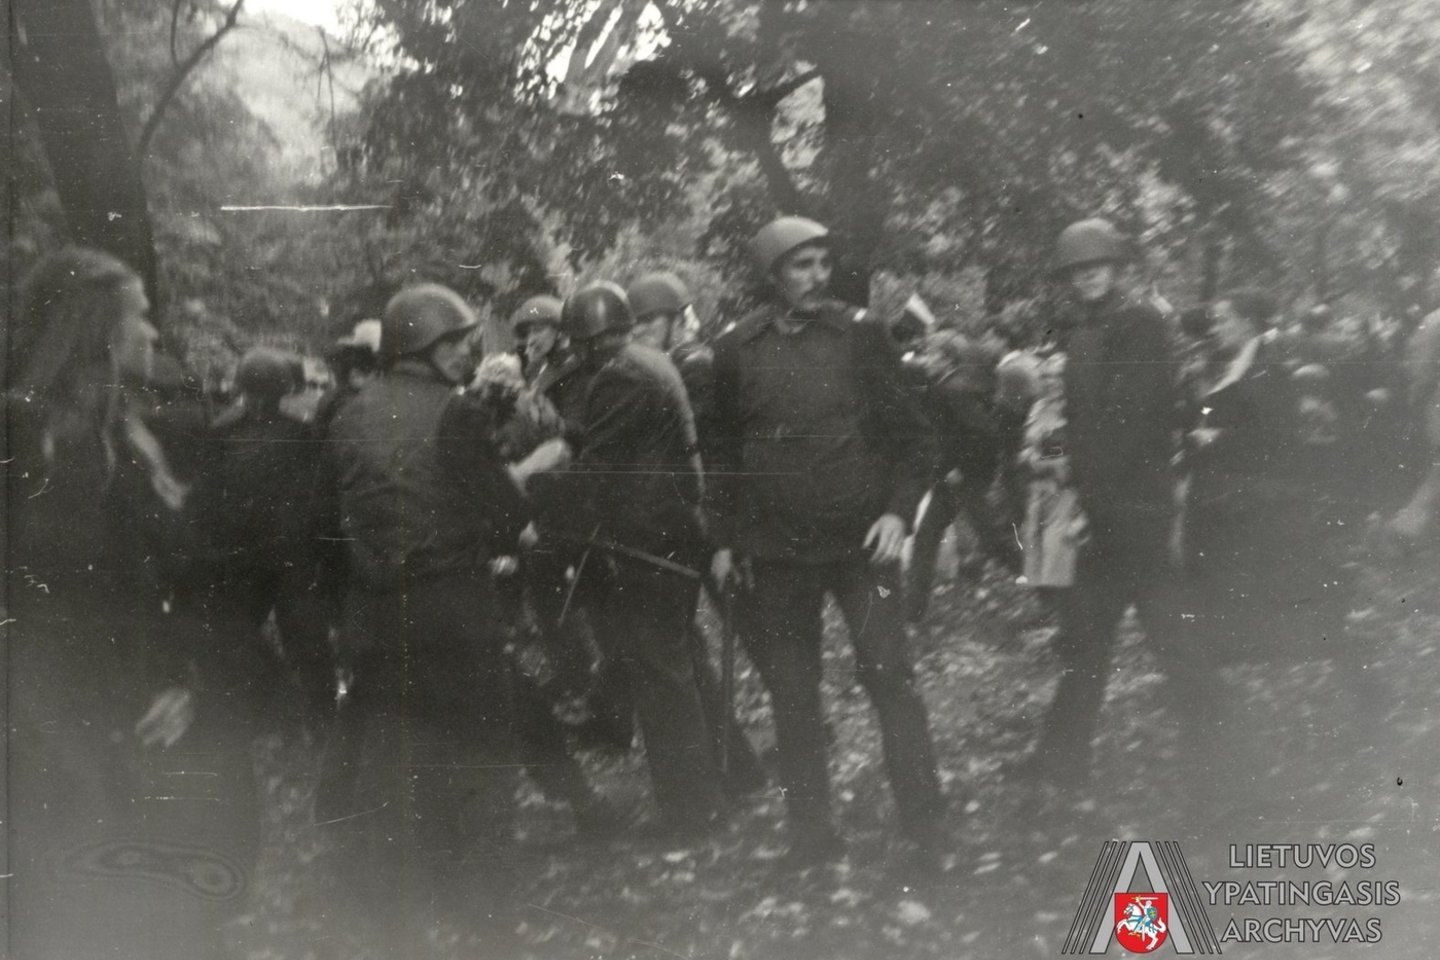 Lietuvos laisvės lygos 1988 m. rugsėjo 28 d. mitingą malšina milicijos ir SSRS vidaus kariuomenės dalinių pajėgos.